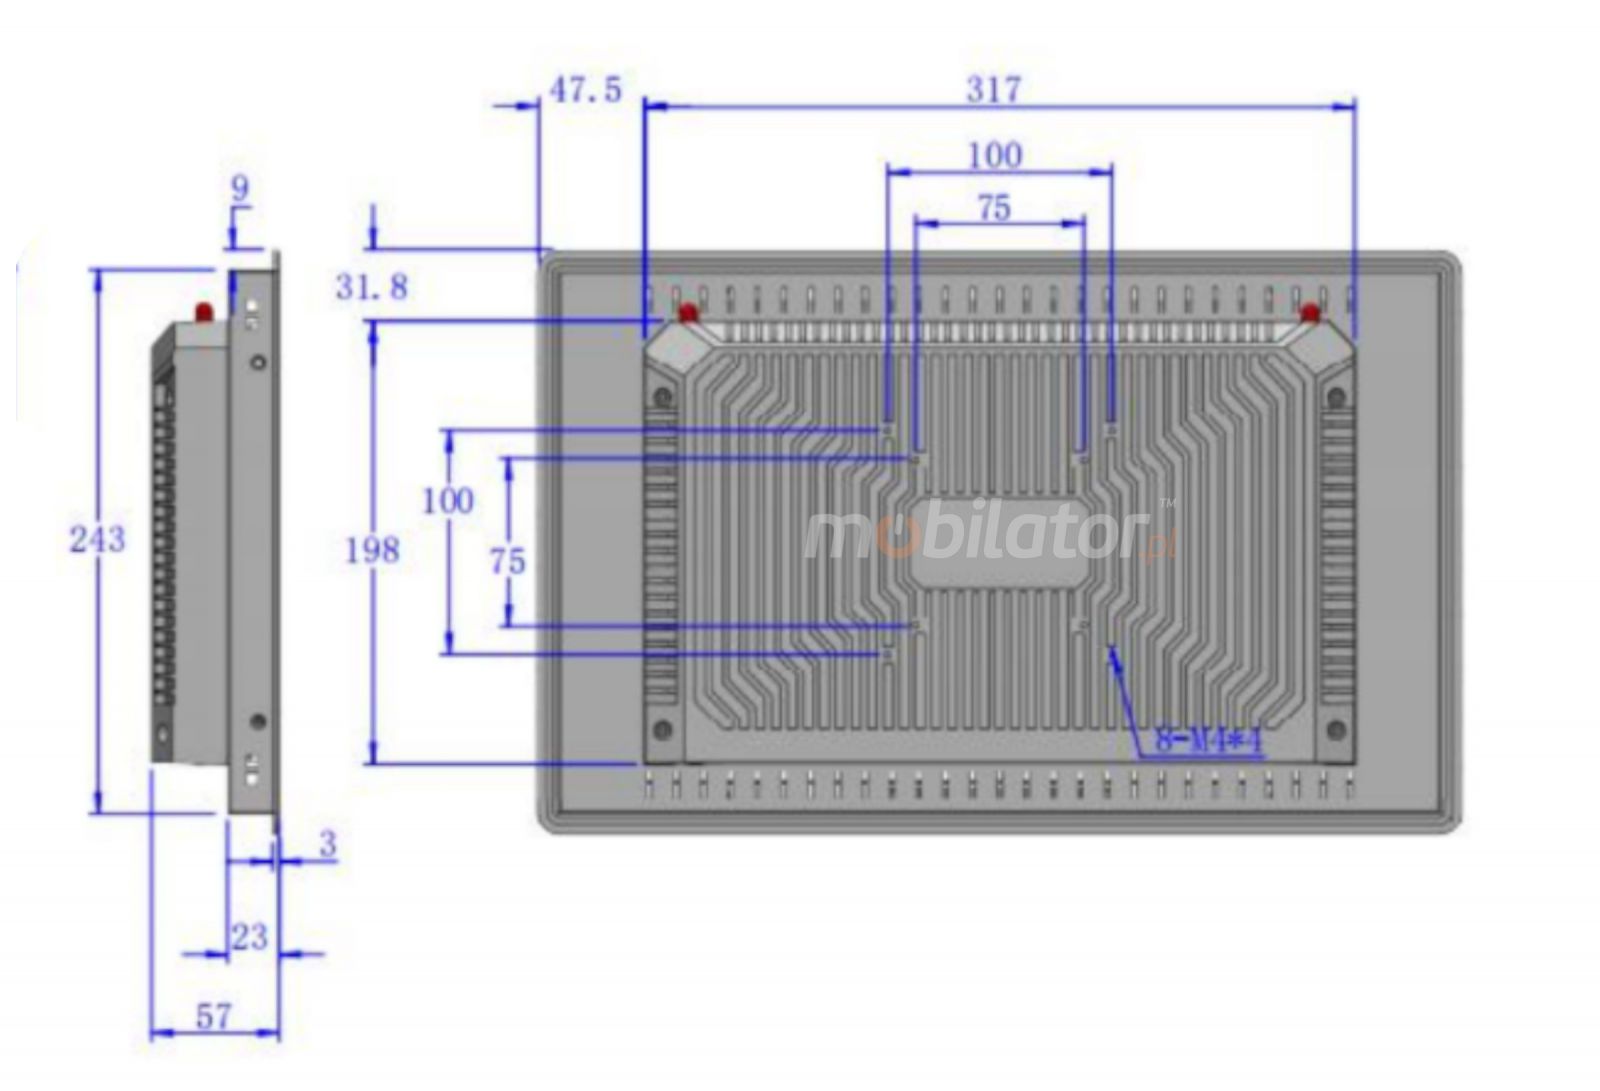  wymiary odpornego komputera panelowego BIBOX-156PC2